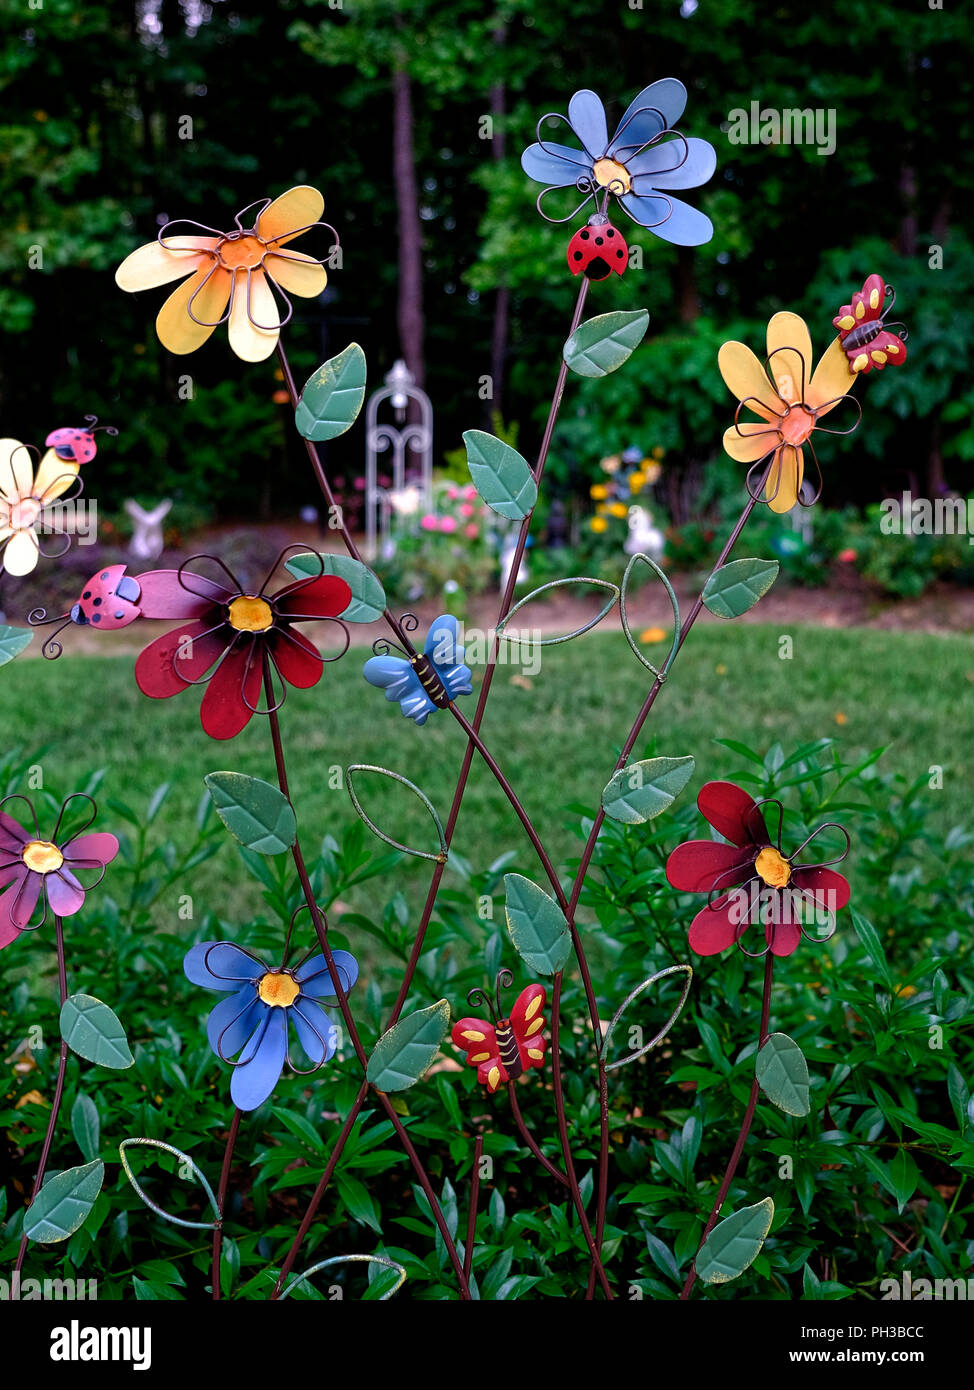 Bunte garten Kunst in einem vorstädtischen Einfamilienhaus Garten mit Metall  daisy wie Blumen Stockfotografie - Alamy